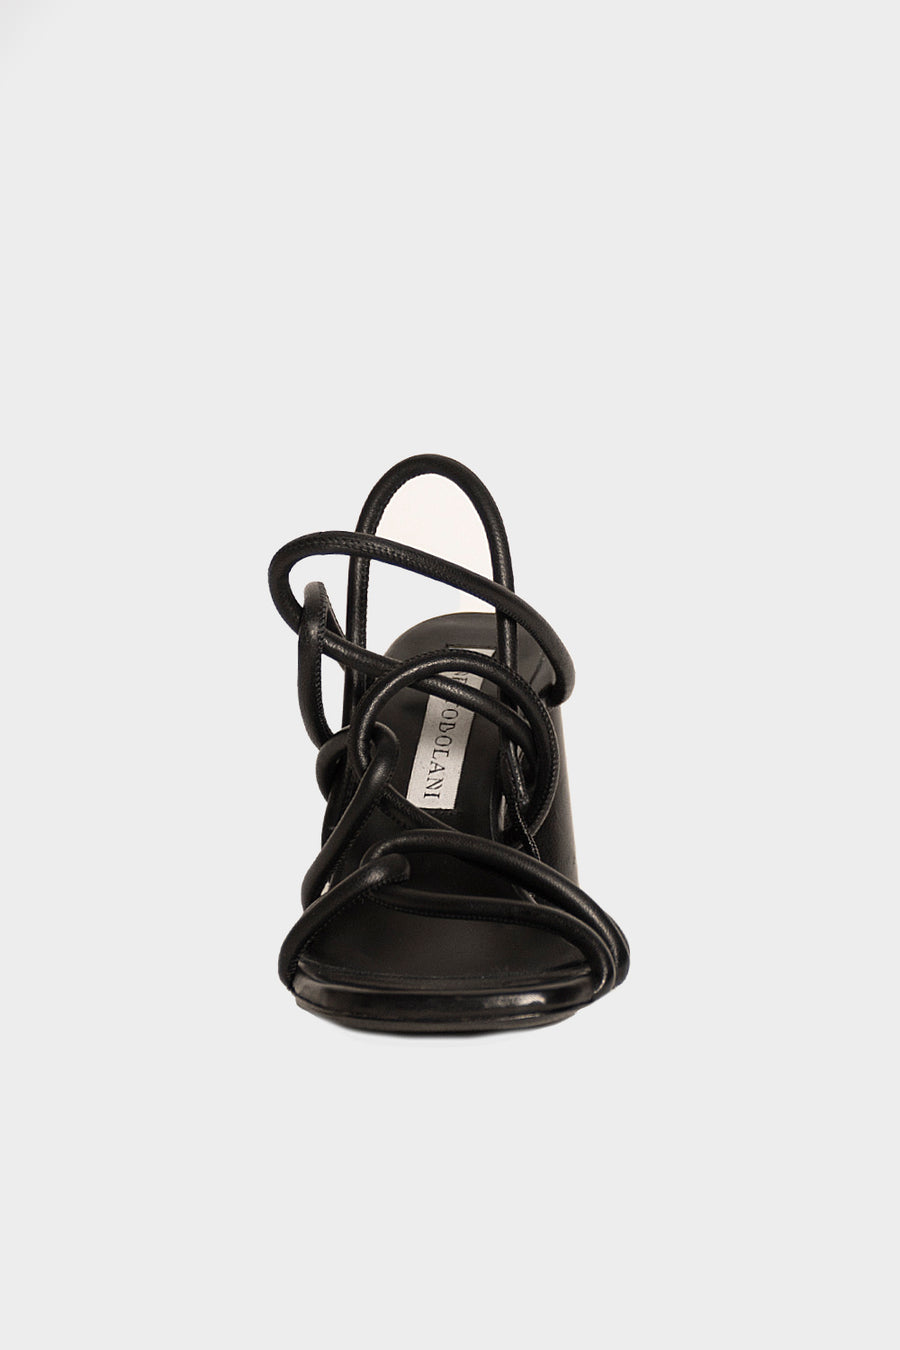 Sandalo Ernesto Dolani in pelle nero 4dvit02